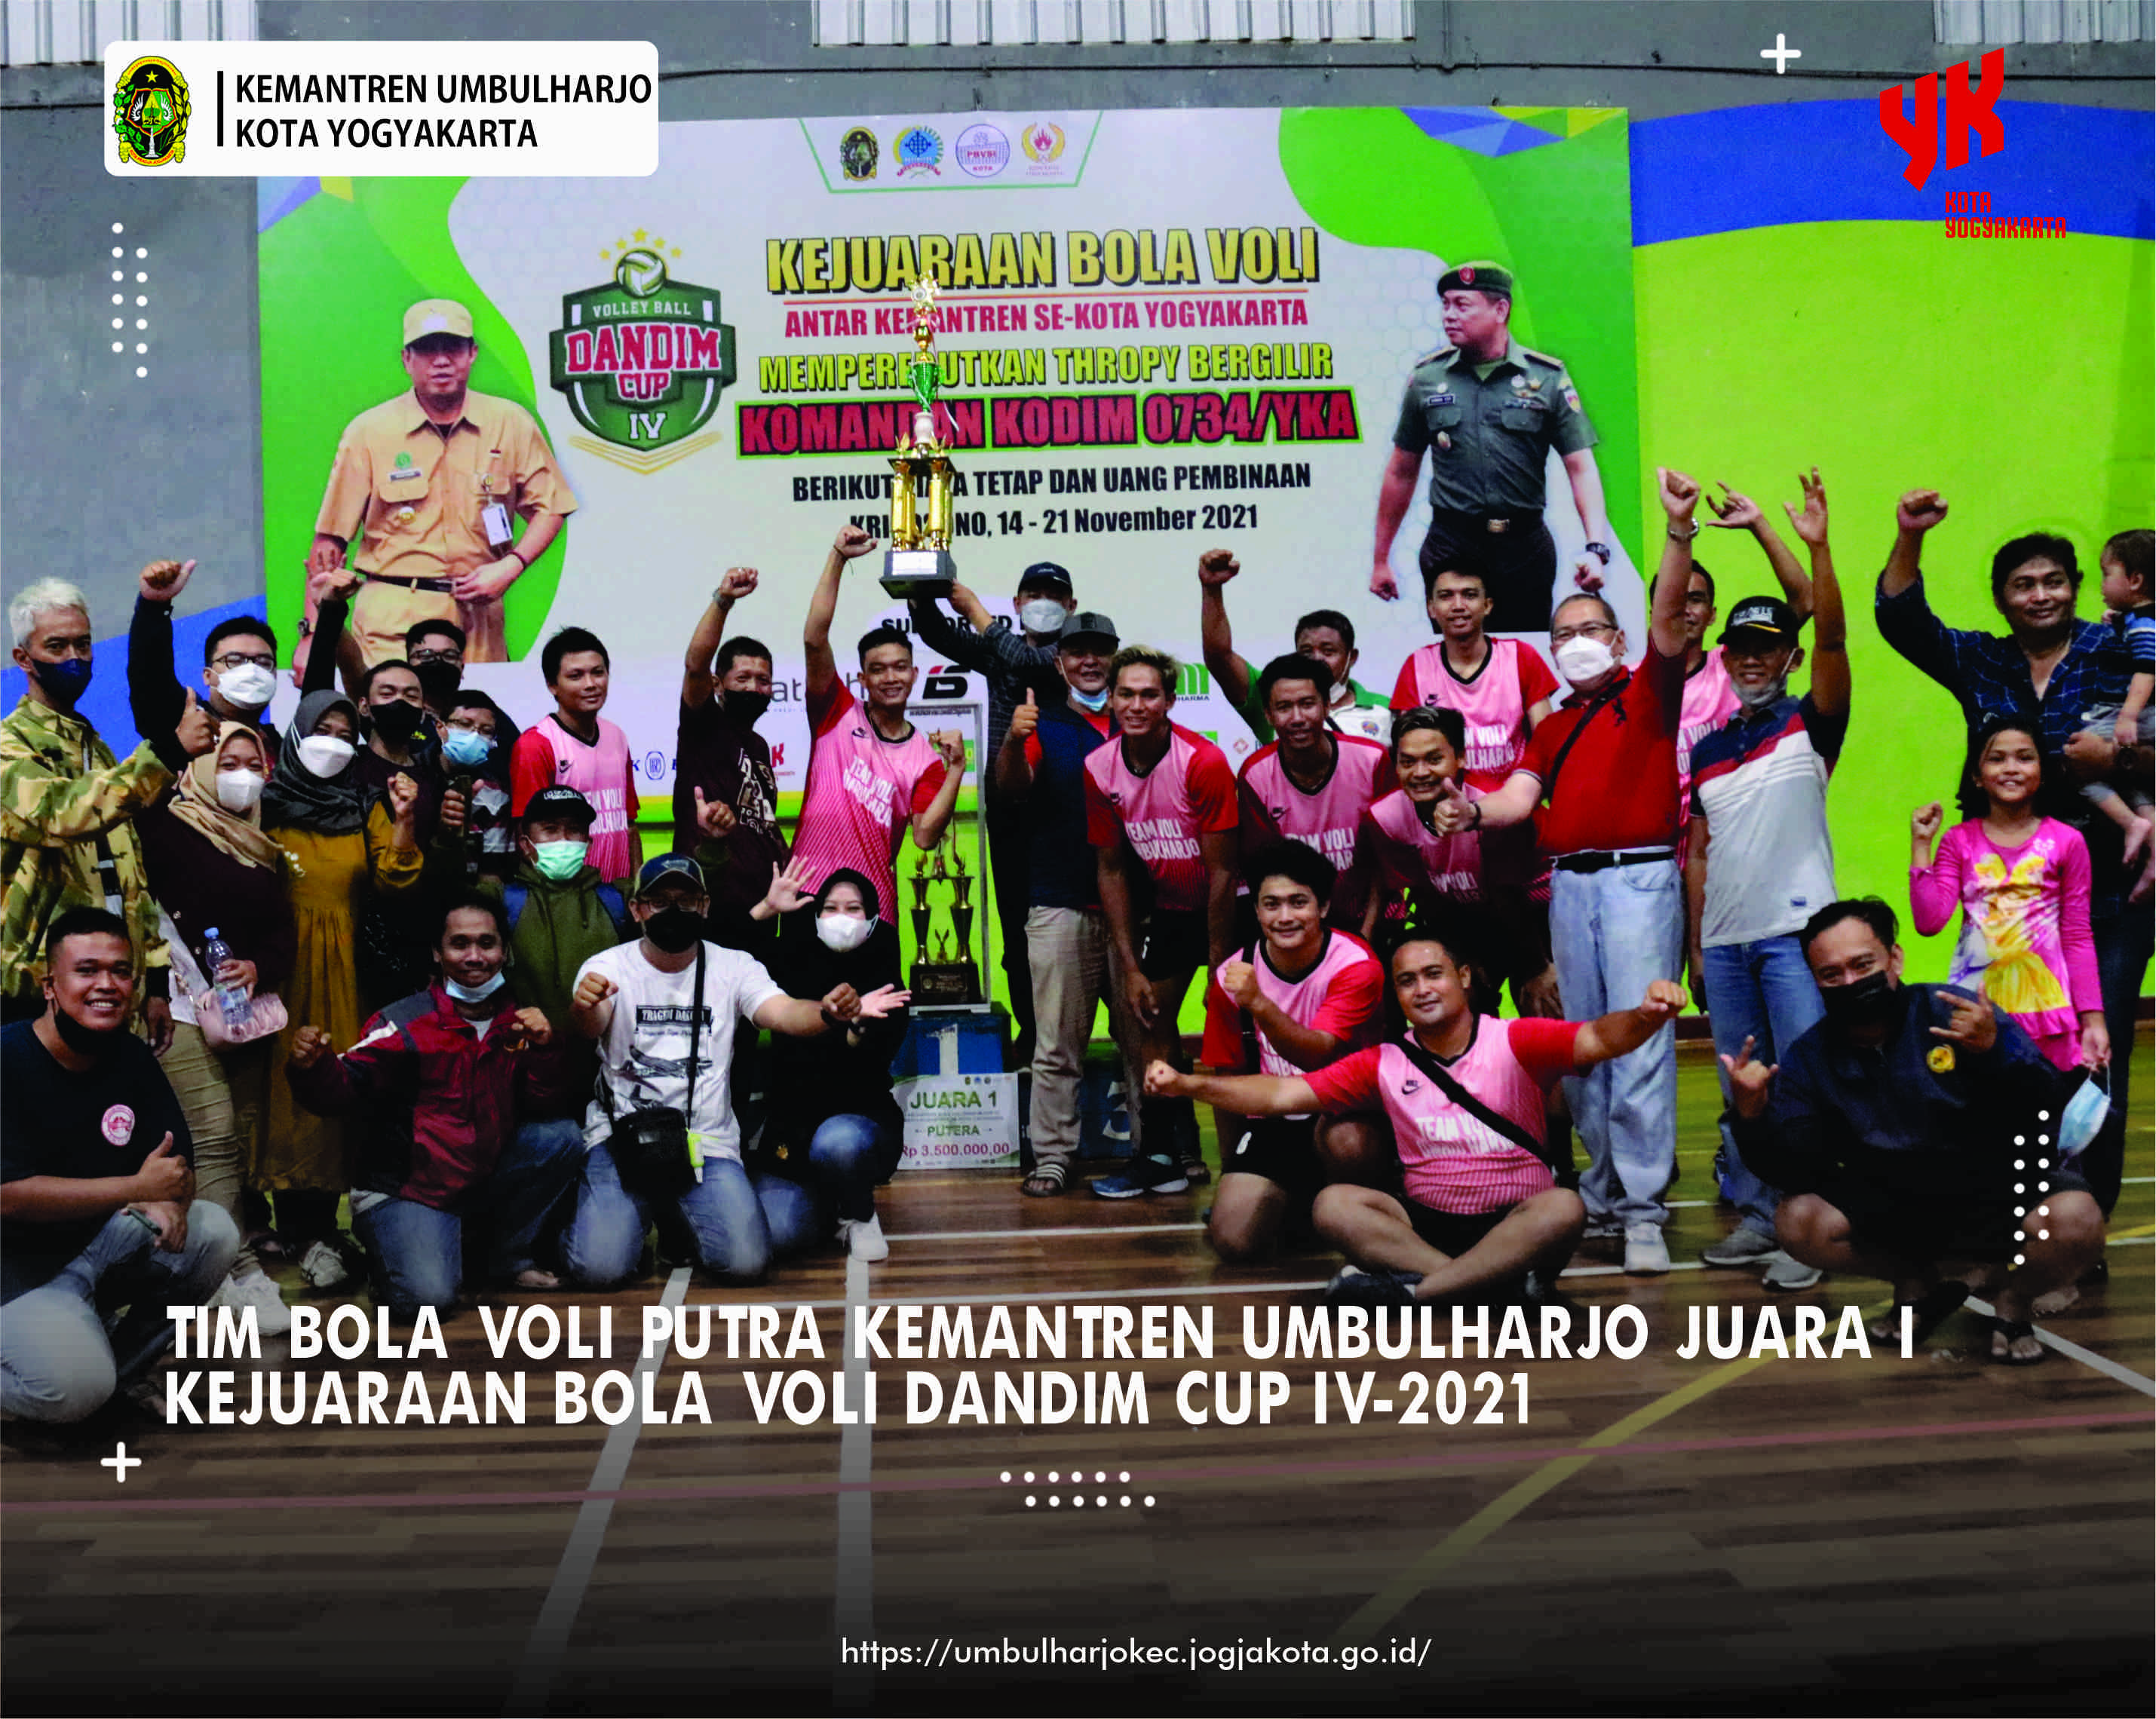 Tim Bola Voli Putra Kemantren Umbulharjo JUARA 1 Kejuaraan Bola Volly Dandim Cup IV-2021